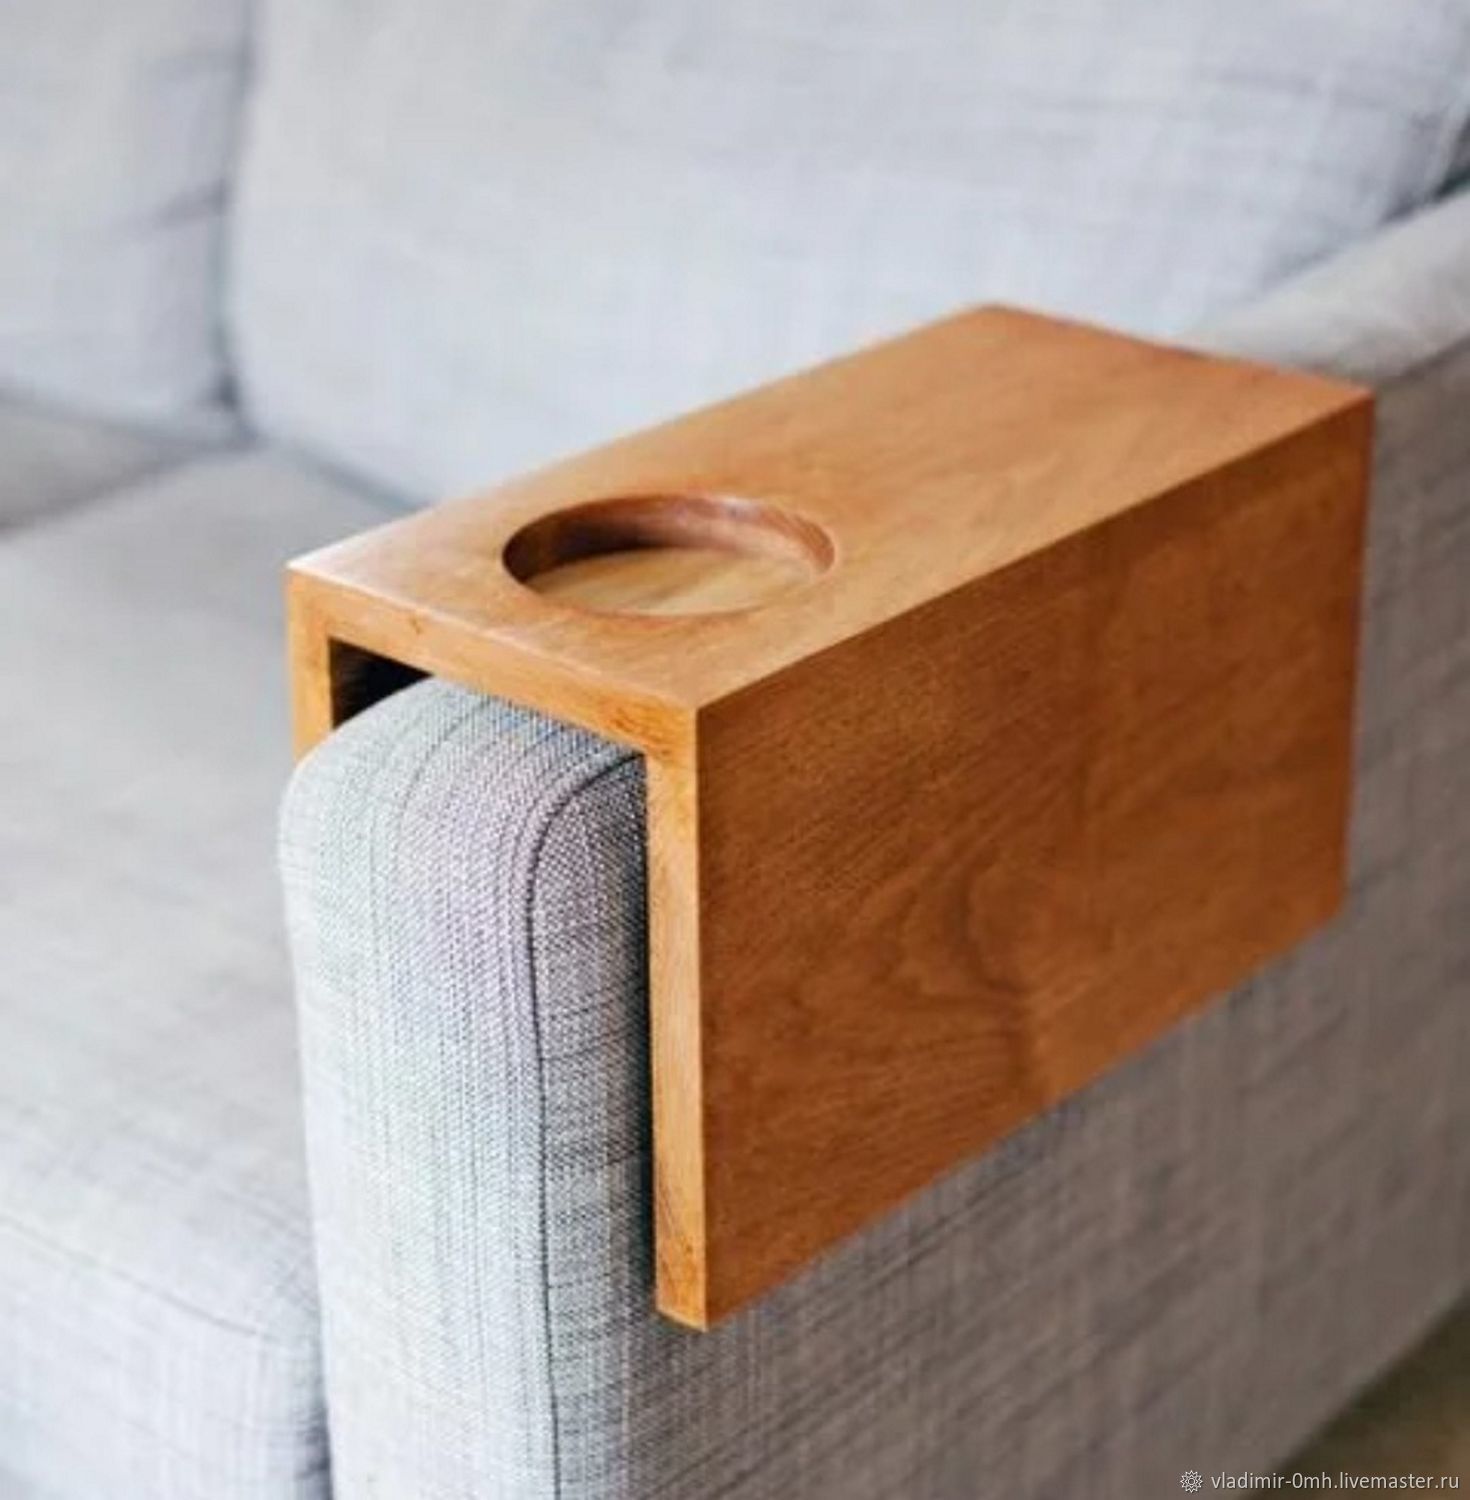  (столик) для кофе - накладка на подлокотник кресла, дивана .